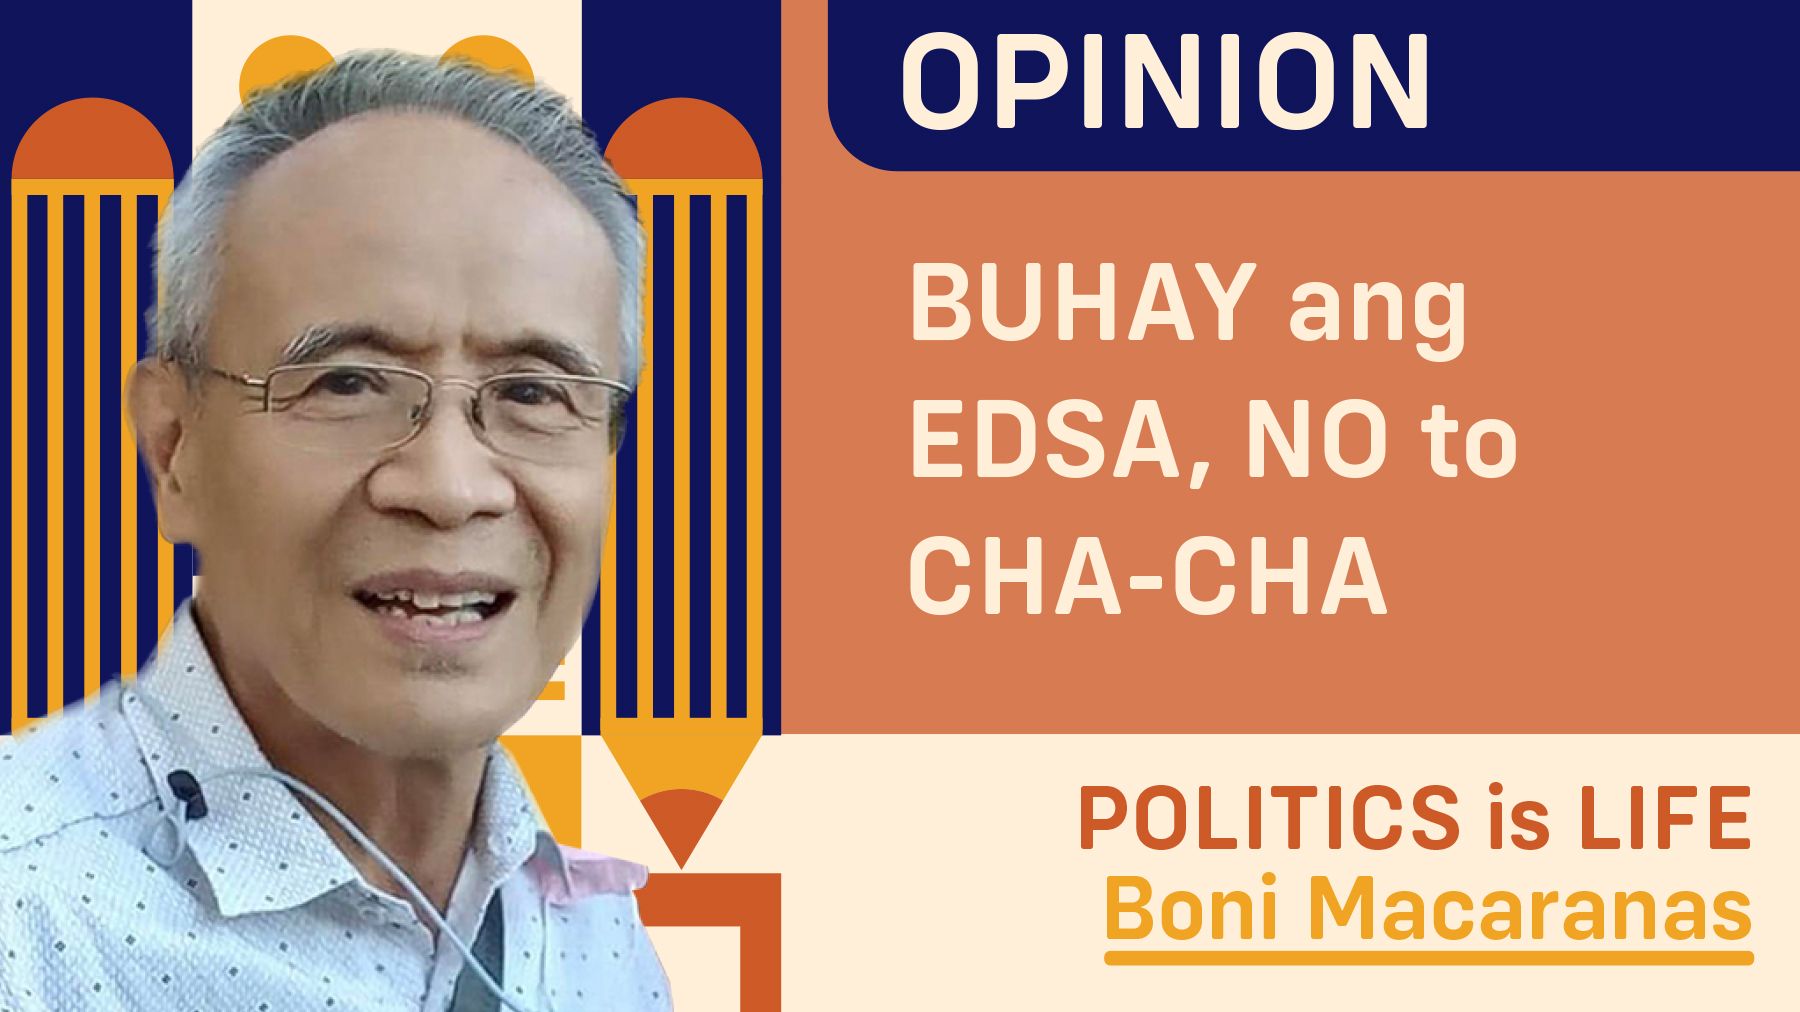 BUHAY ang EDSA, NO to CHA-CHA